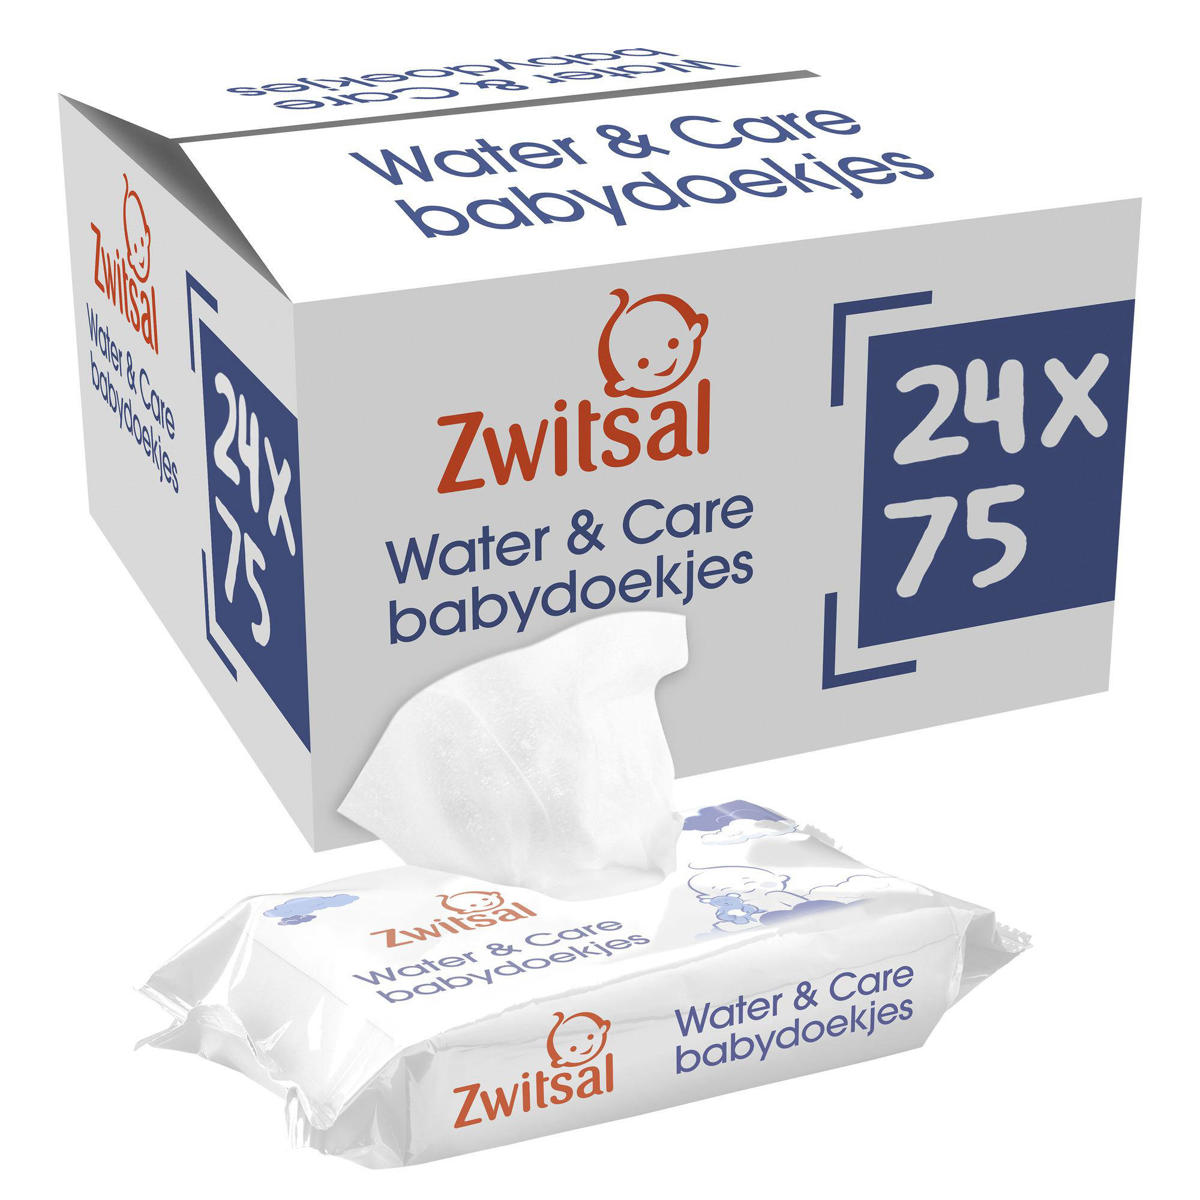 Ontrouw vergeten uitbarsting Zwitsal Water & Care Billendoekjes - 24 x 75 stuks - voordeelverpakking |  wehkamp